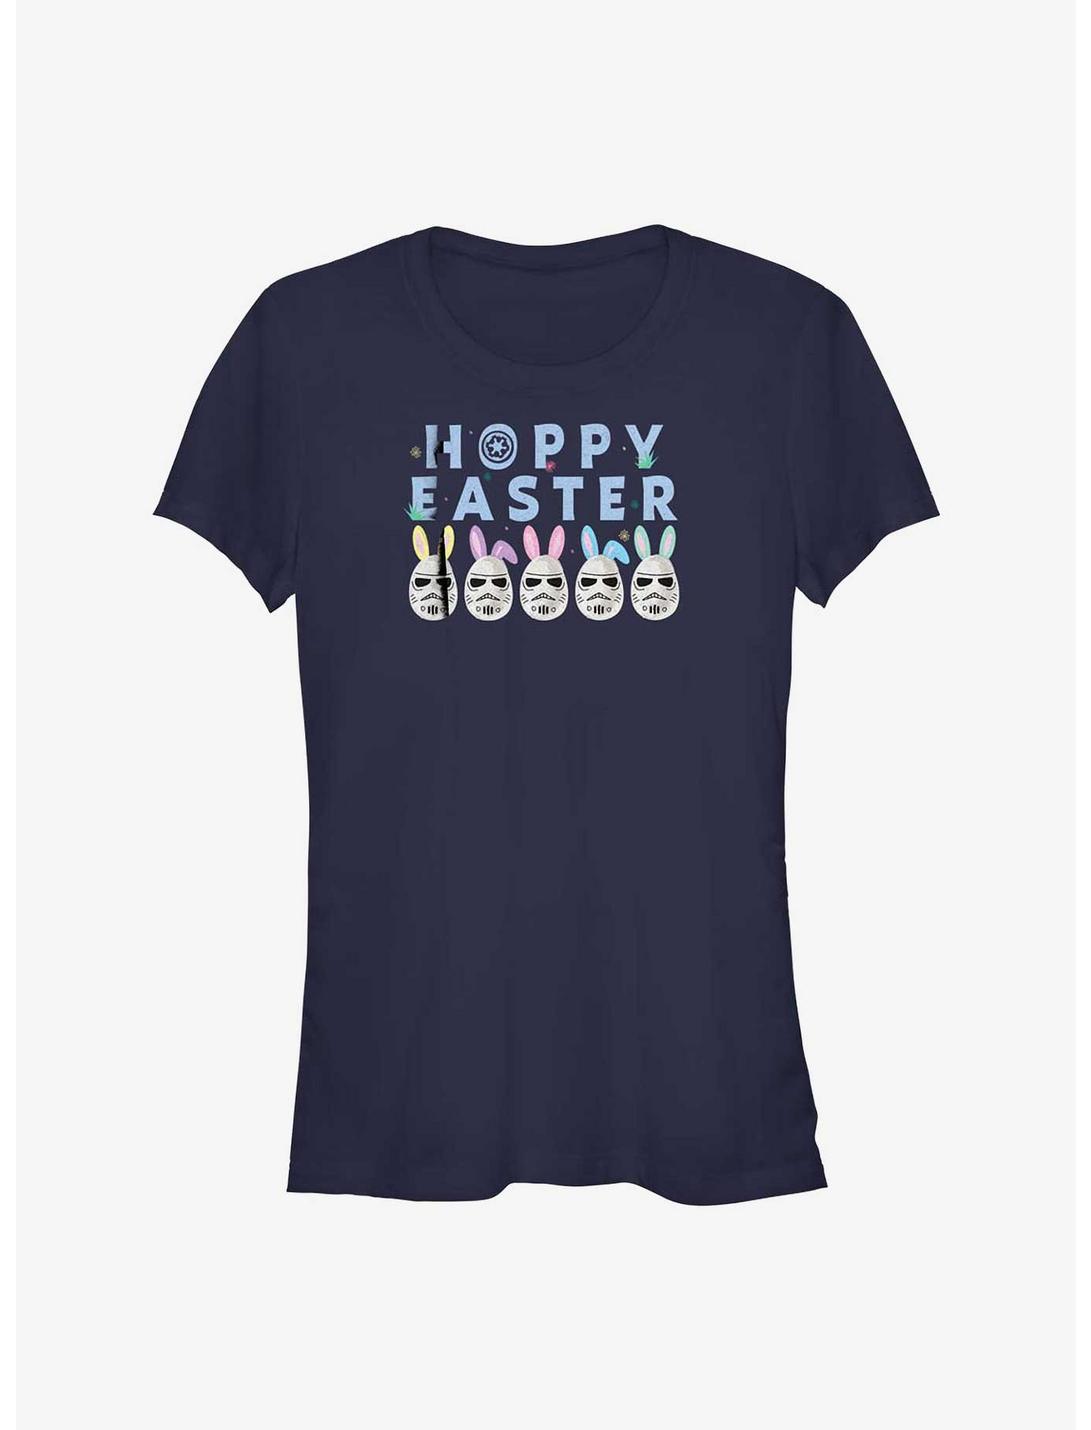 Star Wars Hoppy Easter Egg Stormtrooper Girls T-Shirt, NAVY, hi-res